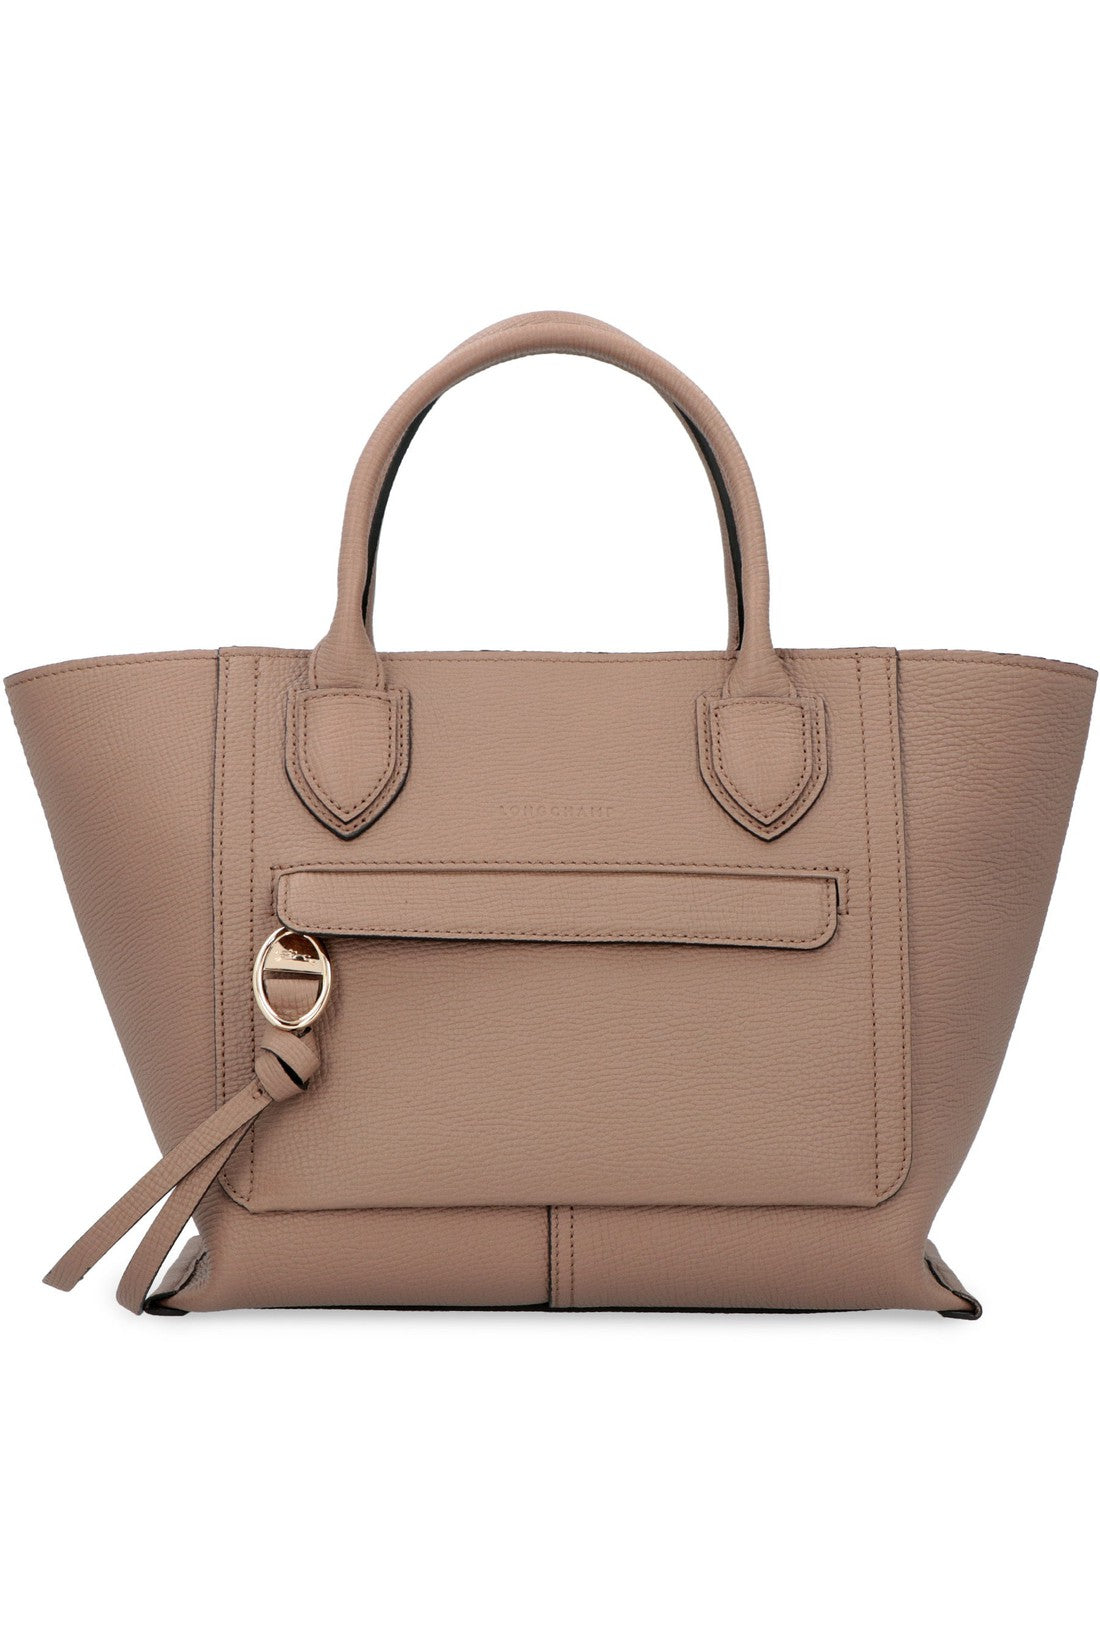 Longchamp-OUTLET-SALE-Mailbox leather bag-ARCHIVIST